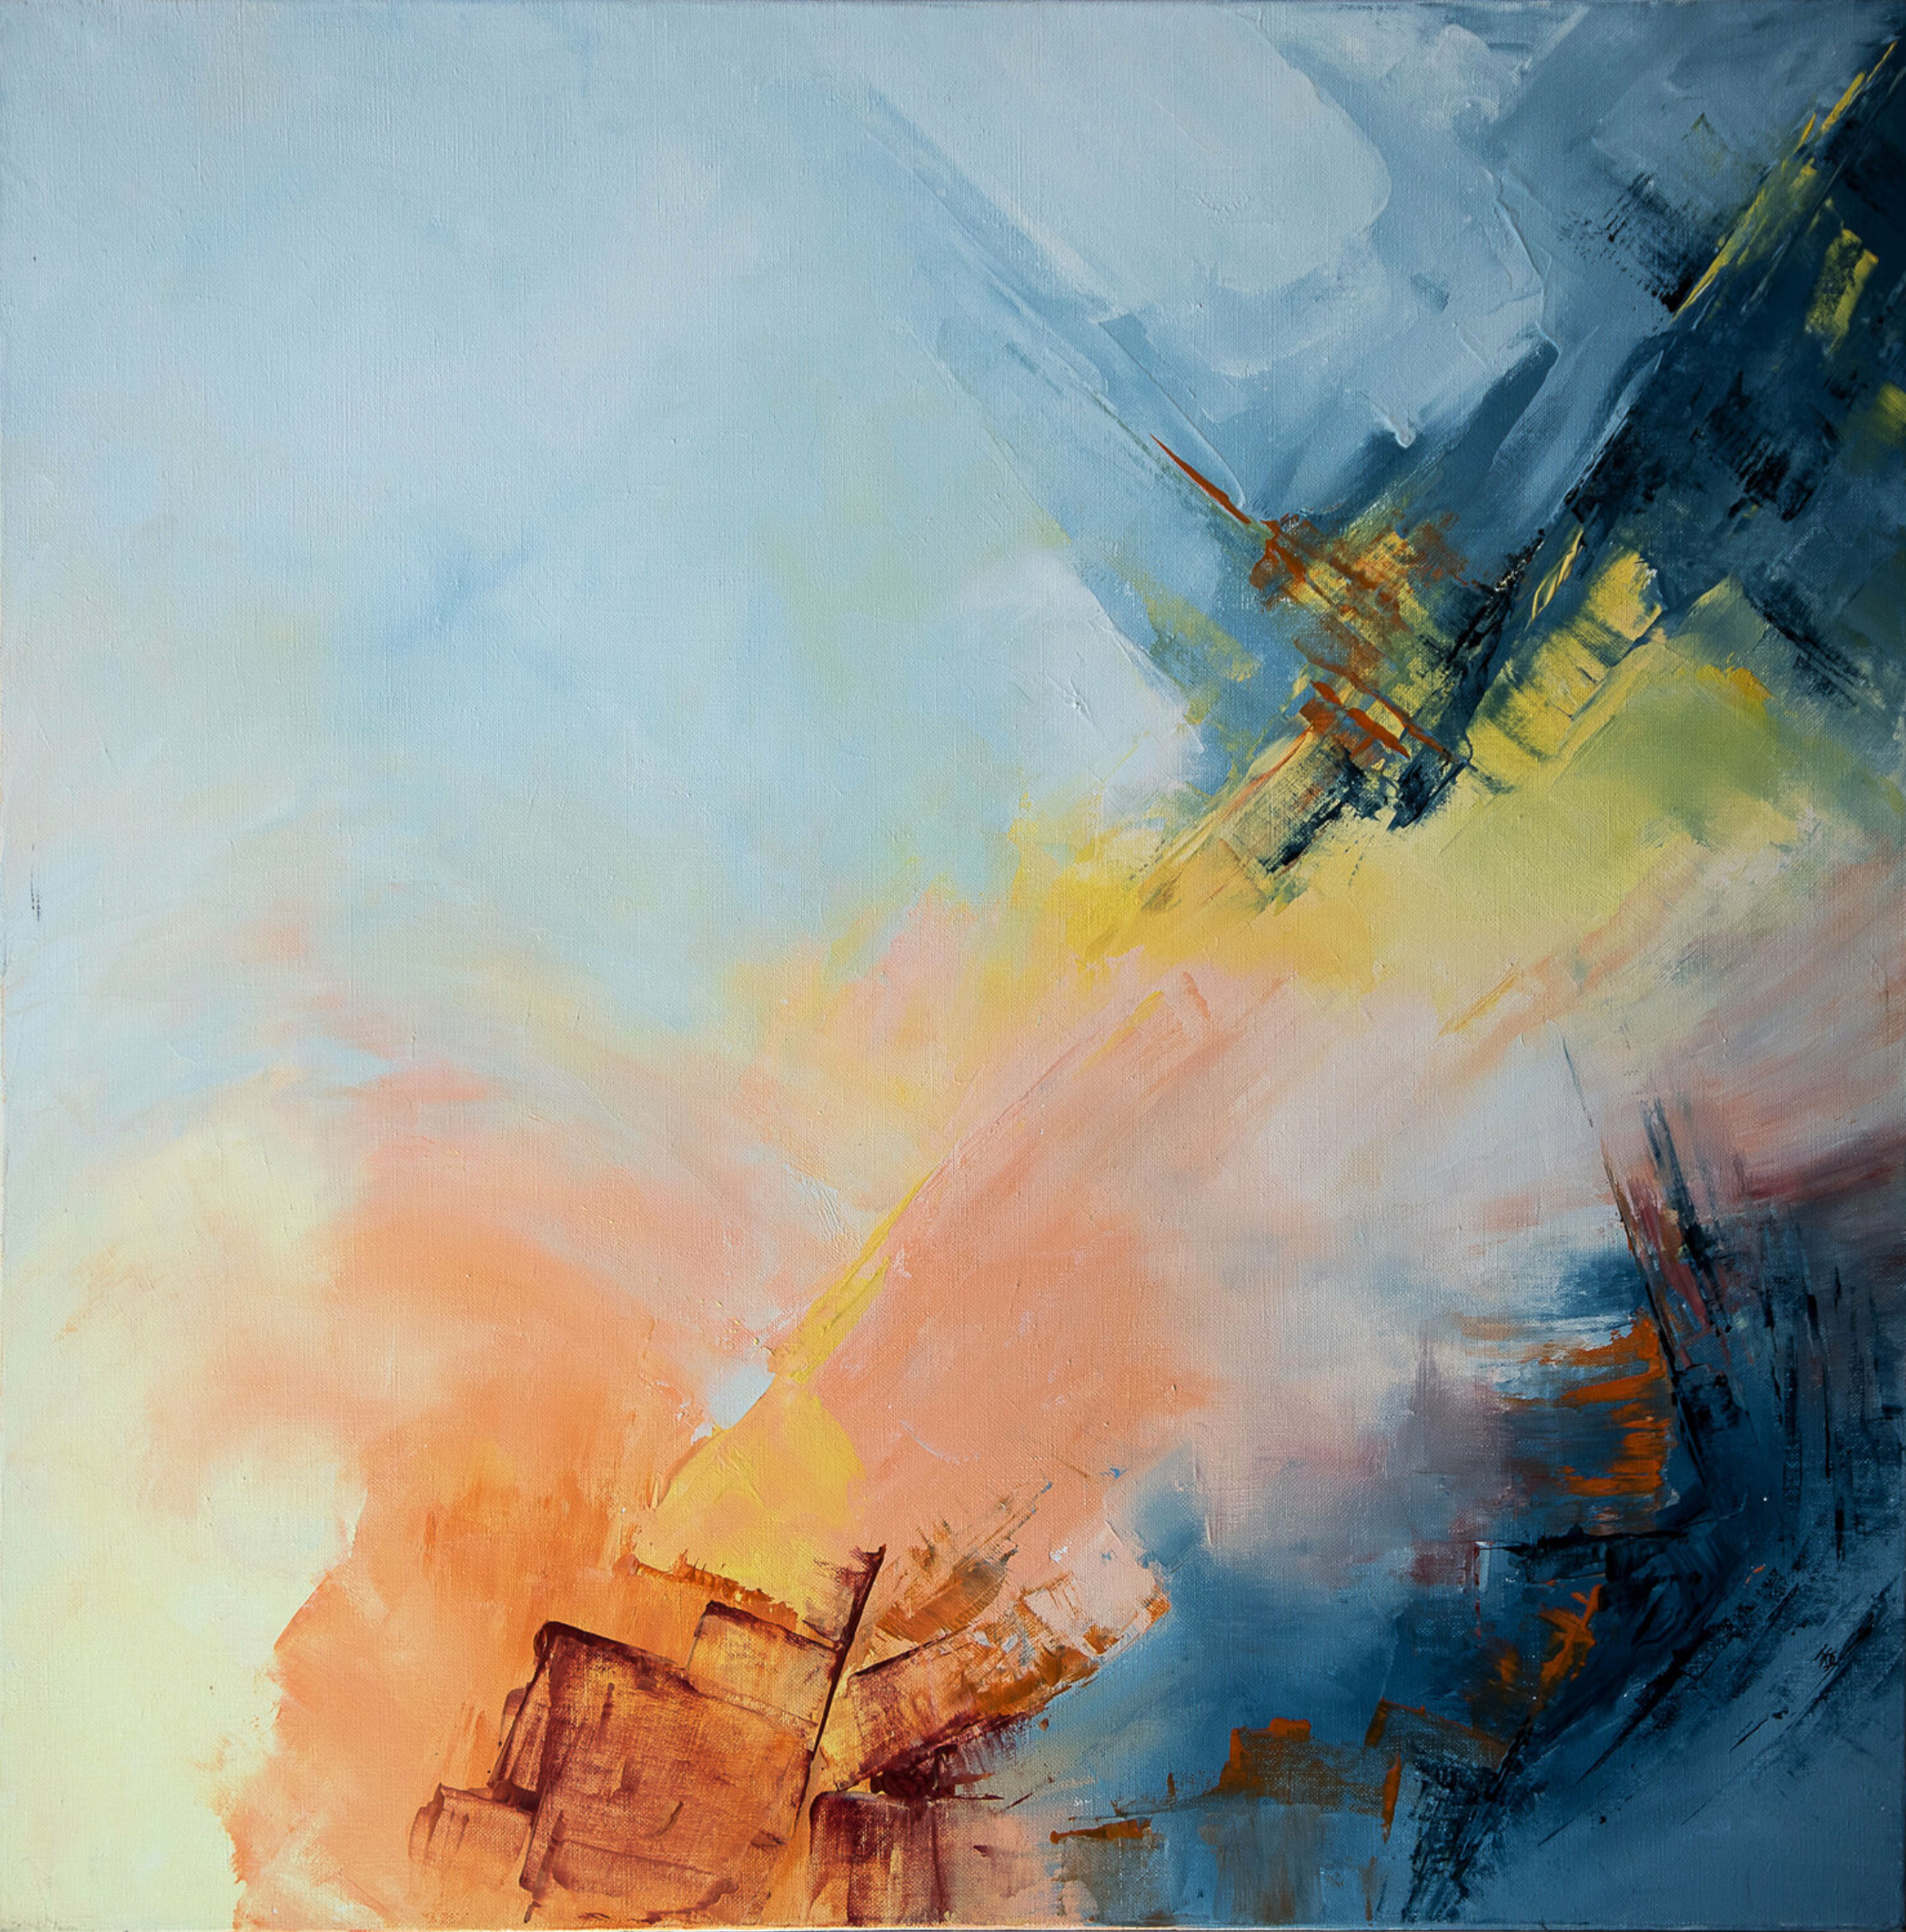 La peinture abstraite de Françoise Dugourd-Caput, "Un jour une vie", montre des scènes visualisées par des zones de différentes couleurs qui peuvent évoquer le début d'une vie et le voyage vers sa fin.